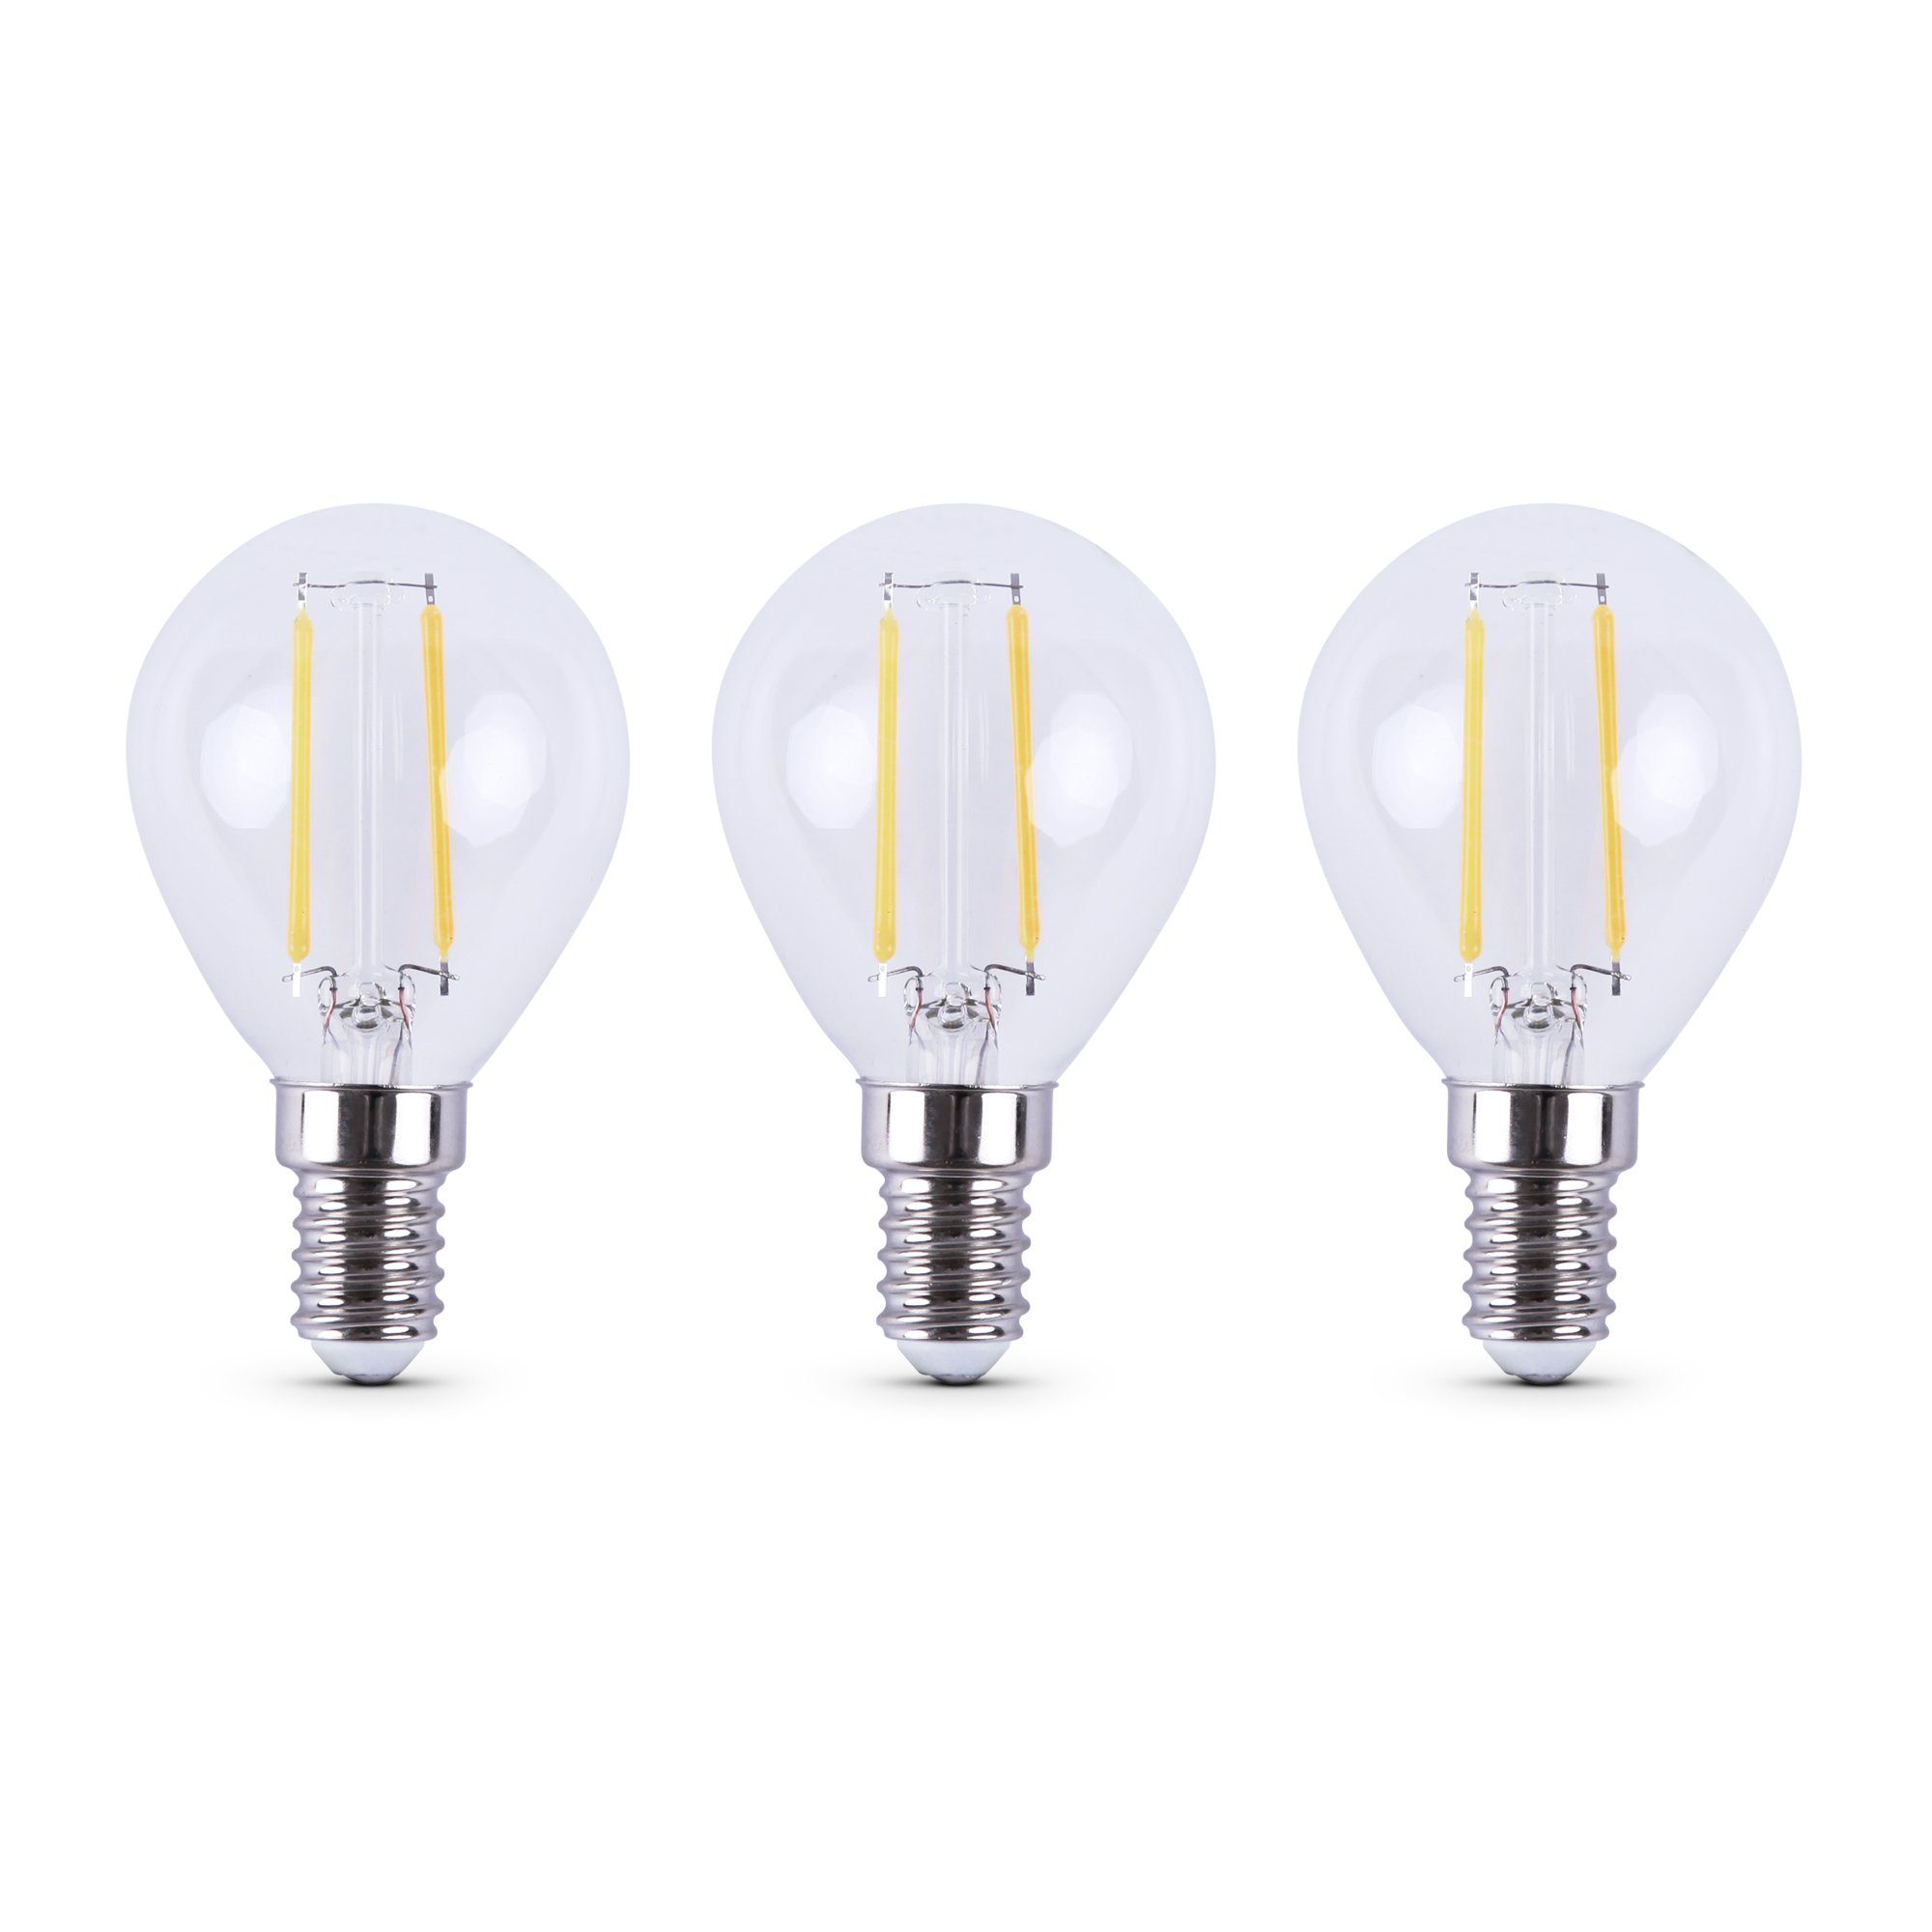 Bestlivings LED-Leuchtmittel 77202 Glühbirne, E14, 3 St., Warmweiß, Retrolicht Glühlampe LED-Birne 2700K Warmweiß